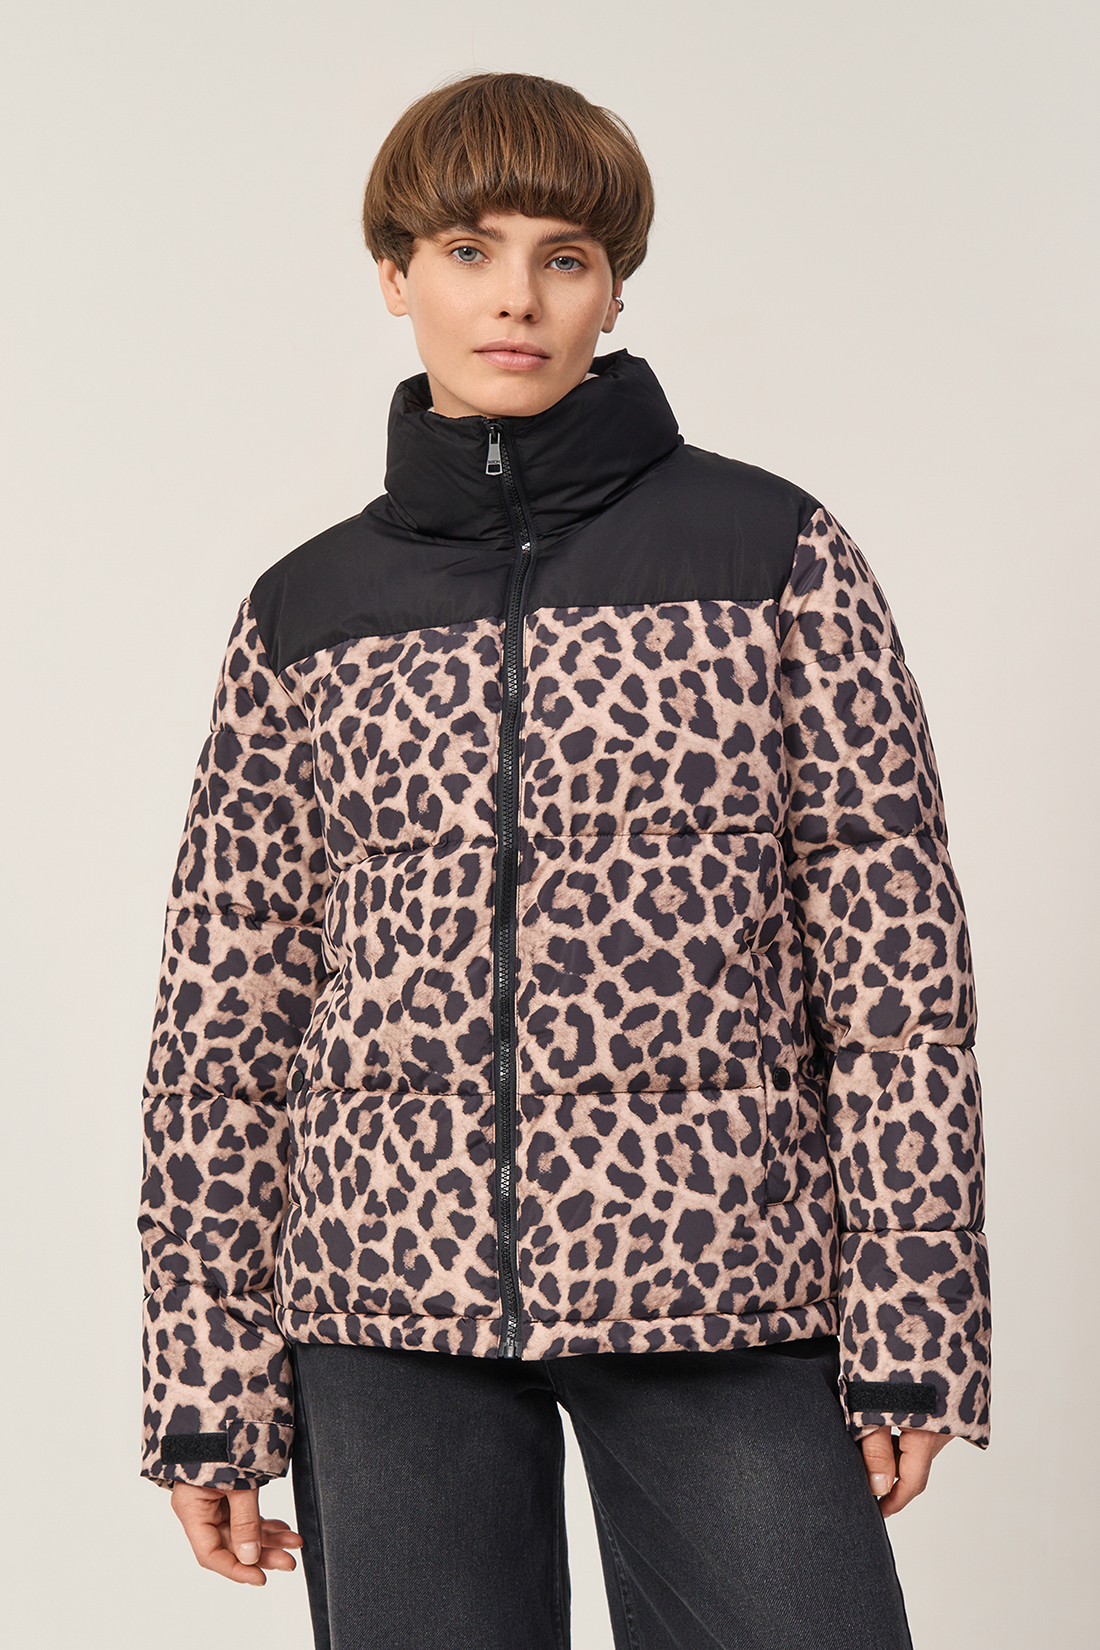 Леопардовая куртка с экопухом (арт. baon B0423528), размер XL, цвет бежевый